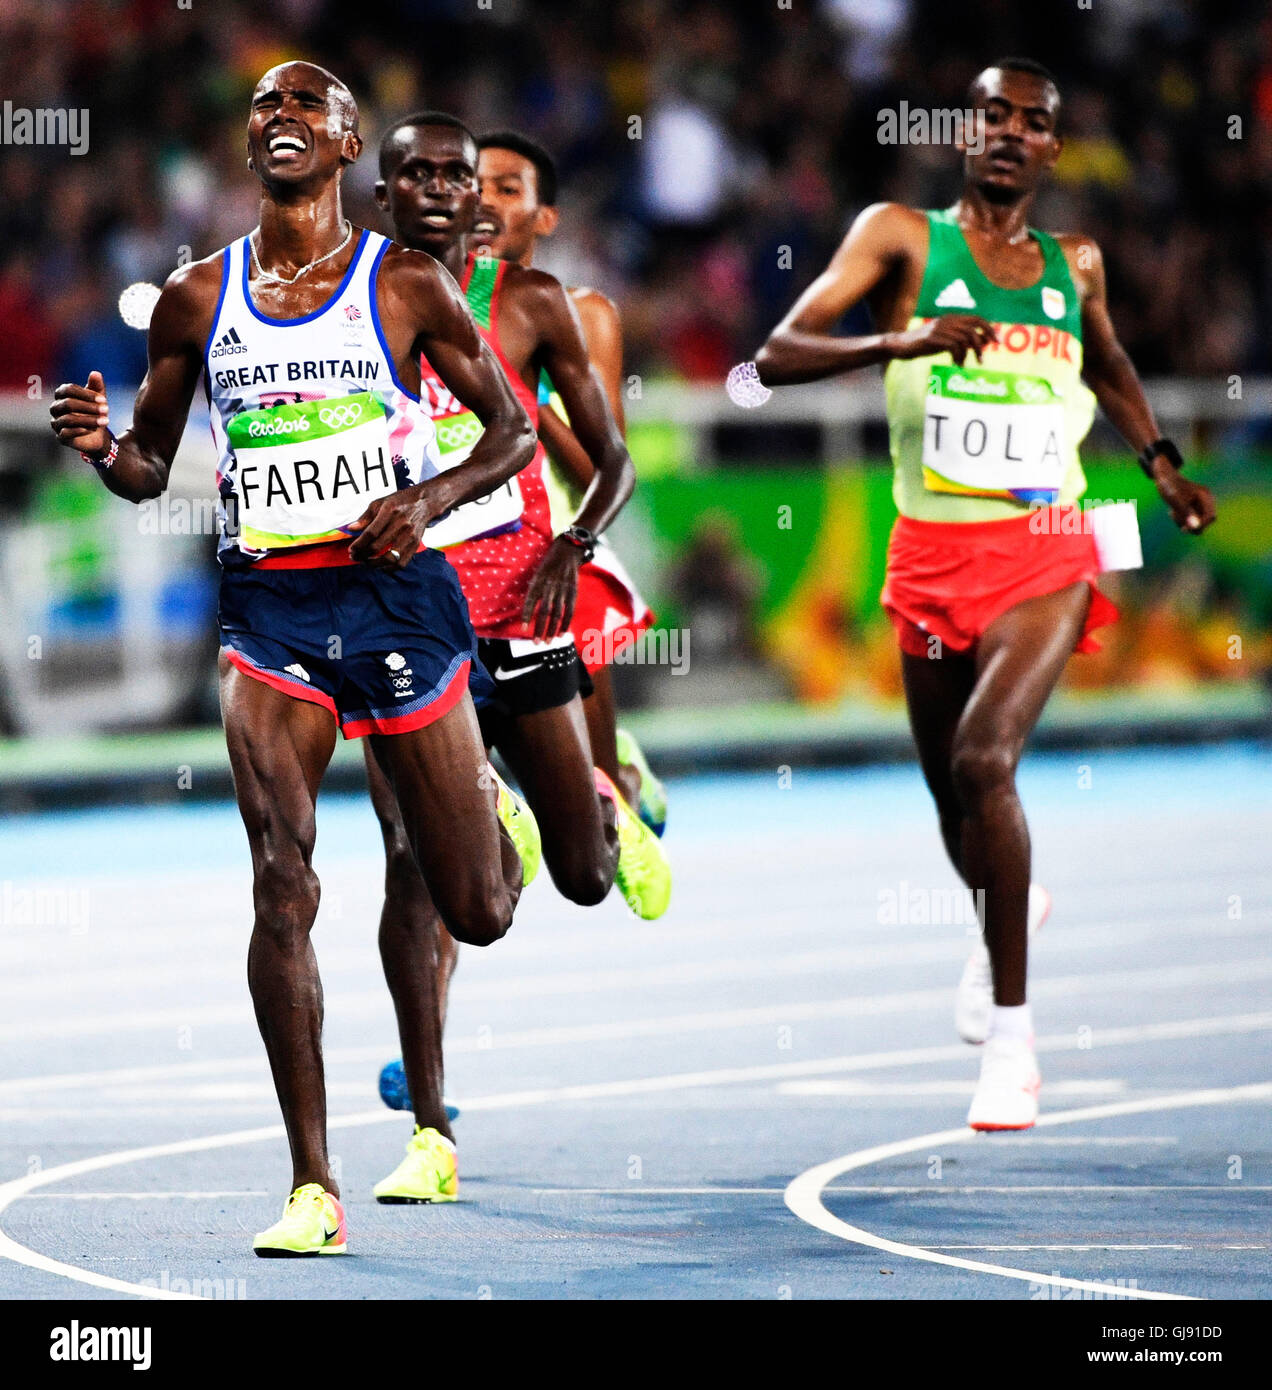 Rio De Janeiro, Brasilien. 13. August 2016. Mo Farah (GBR) gewinnt die Goldmedaille bei der Herren 10.000 m an die 2016 Olympischen Sommer Games.Chase Sutton/Dom/Alamy Live News Stockfoto